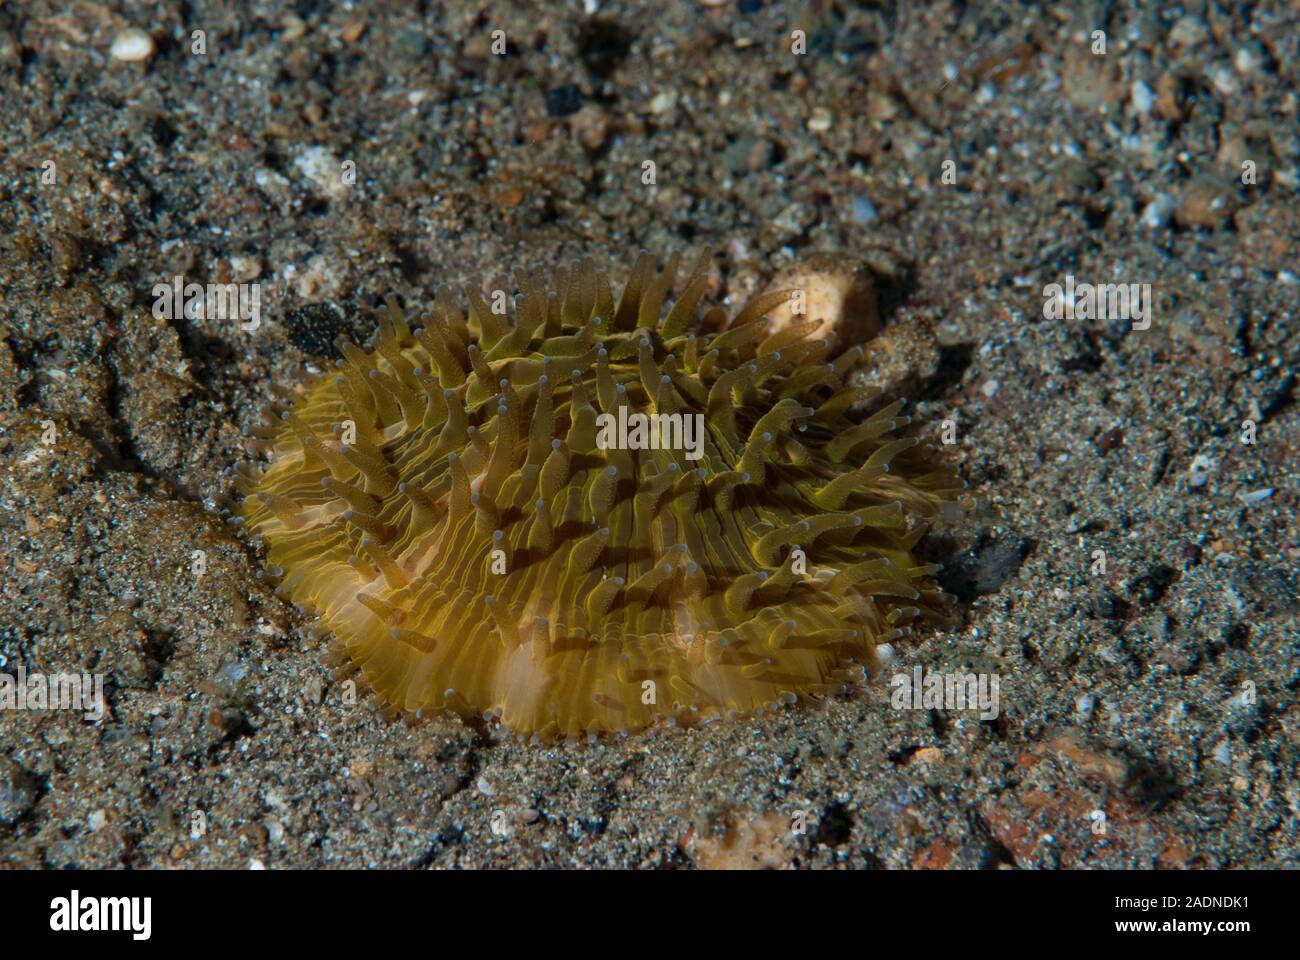 Photographie sous-marine de la vie marine, créatures marines Banque D'Images